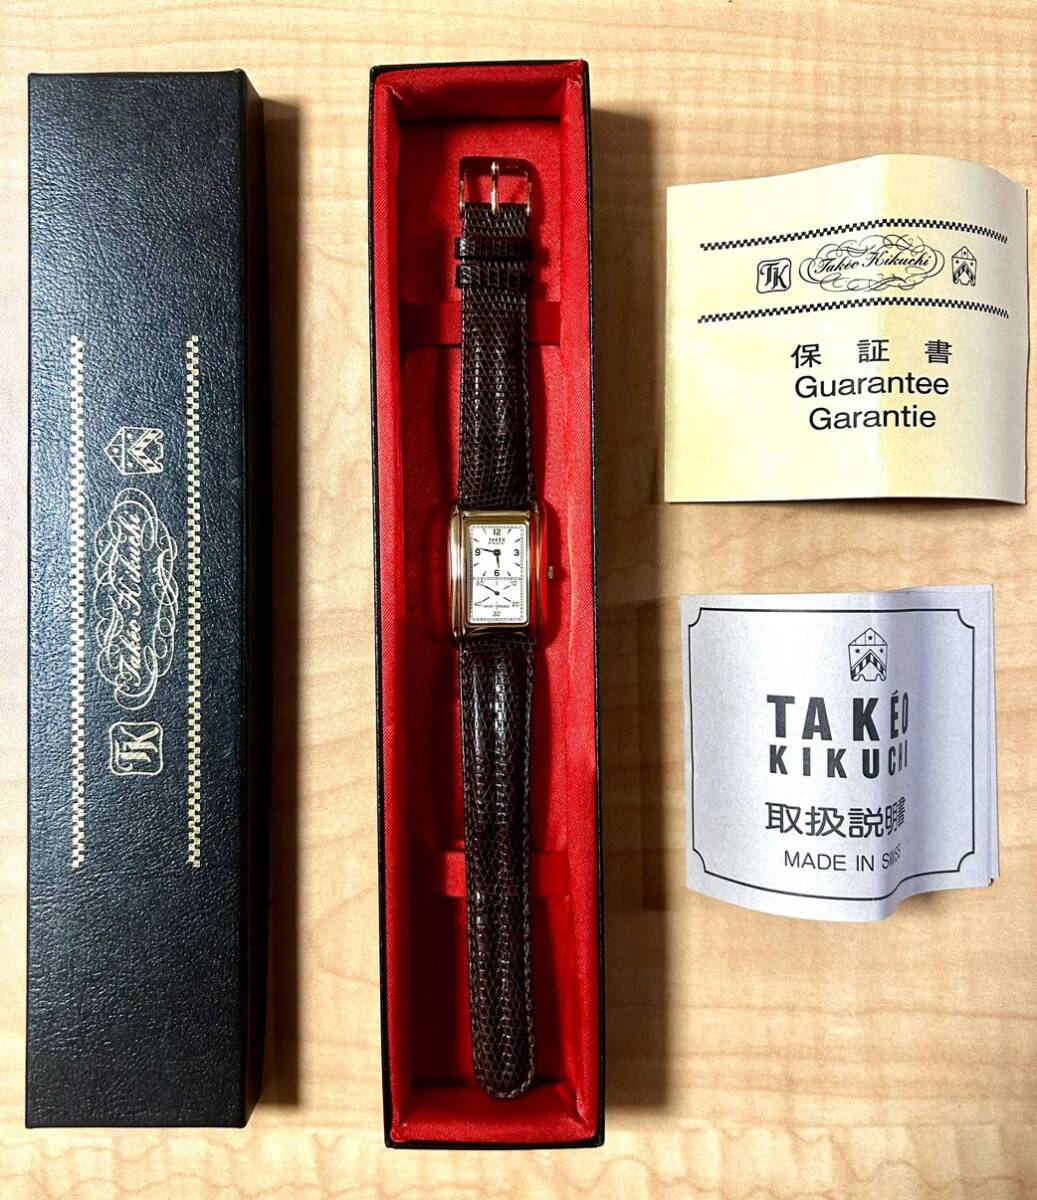  Takeo Kikuchi ручной завод наручные часы прекрасный товар TK3801